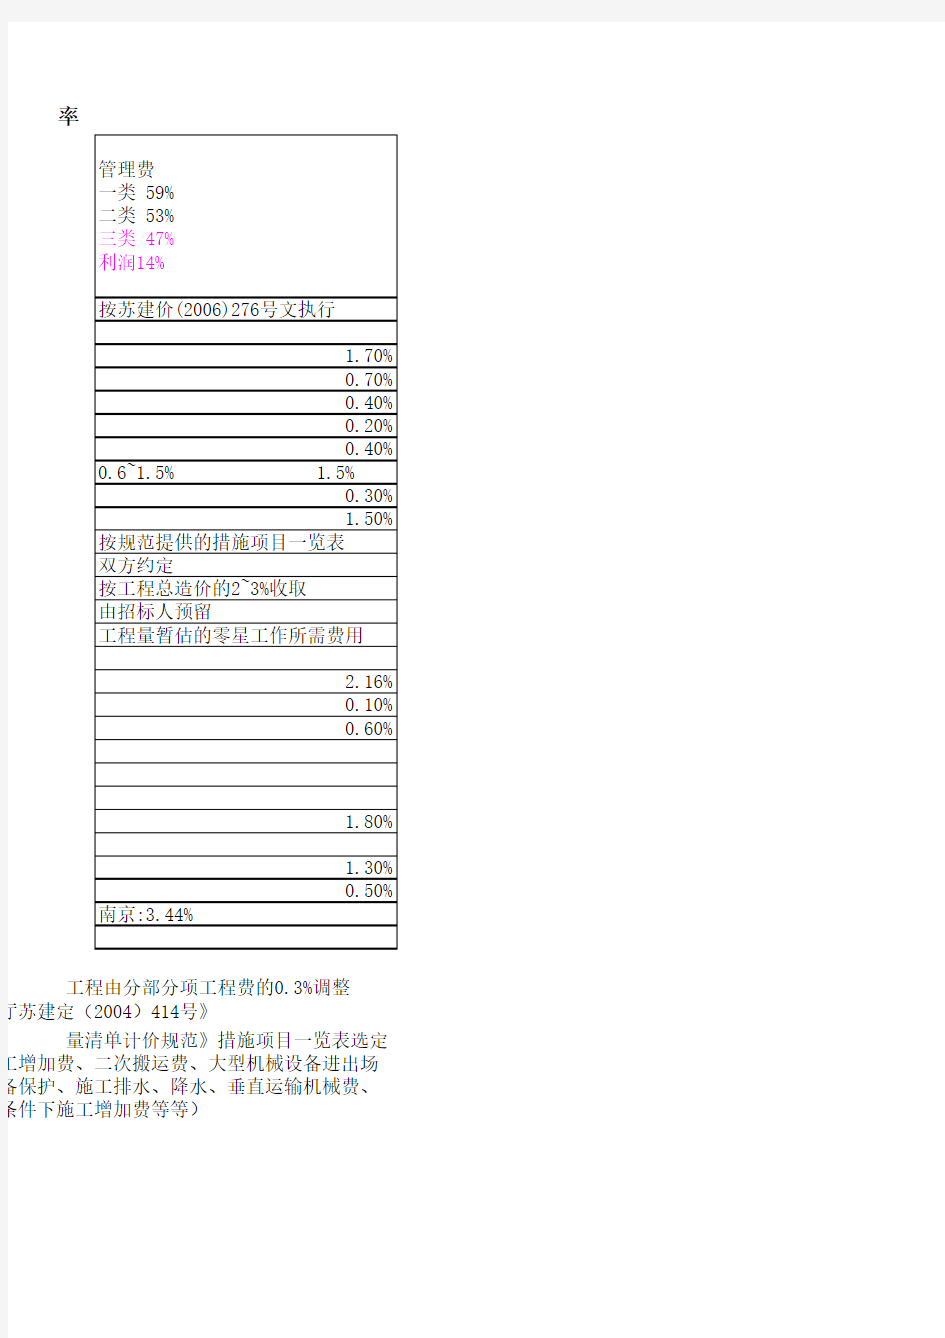 2004年江苏省安装工程计价表-定额